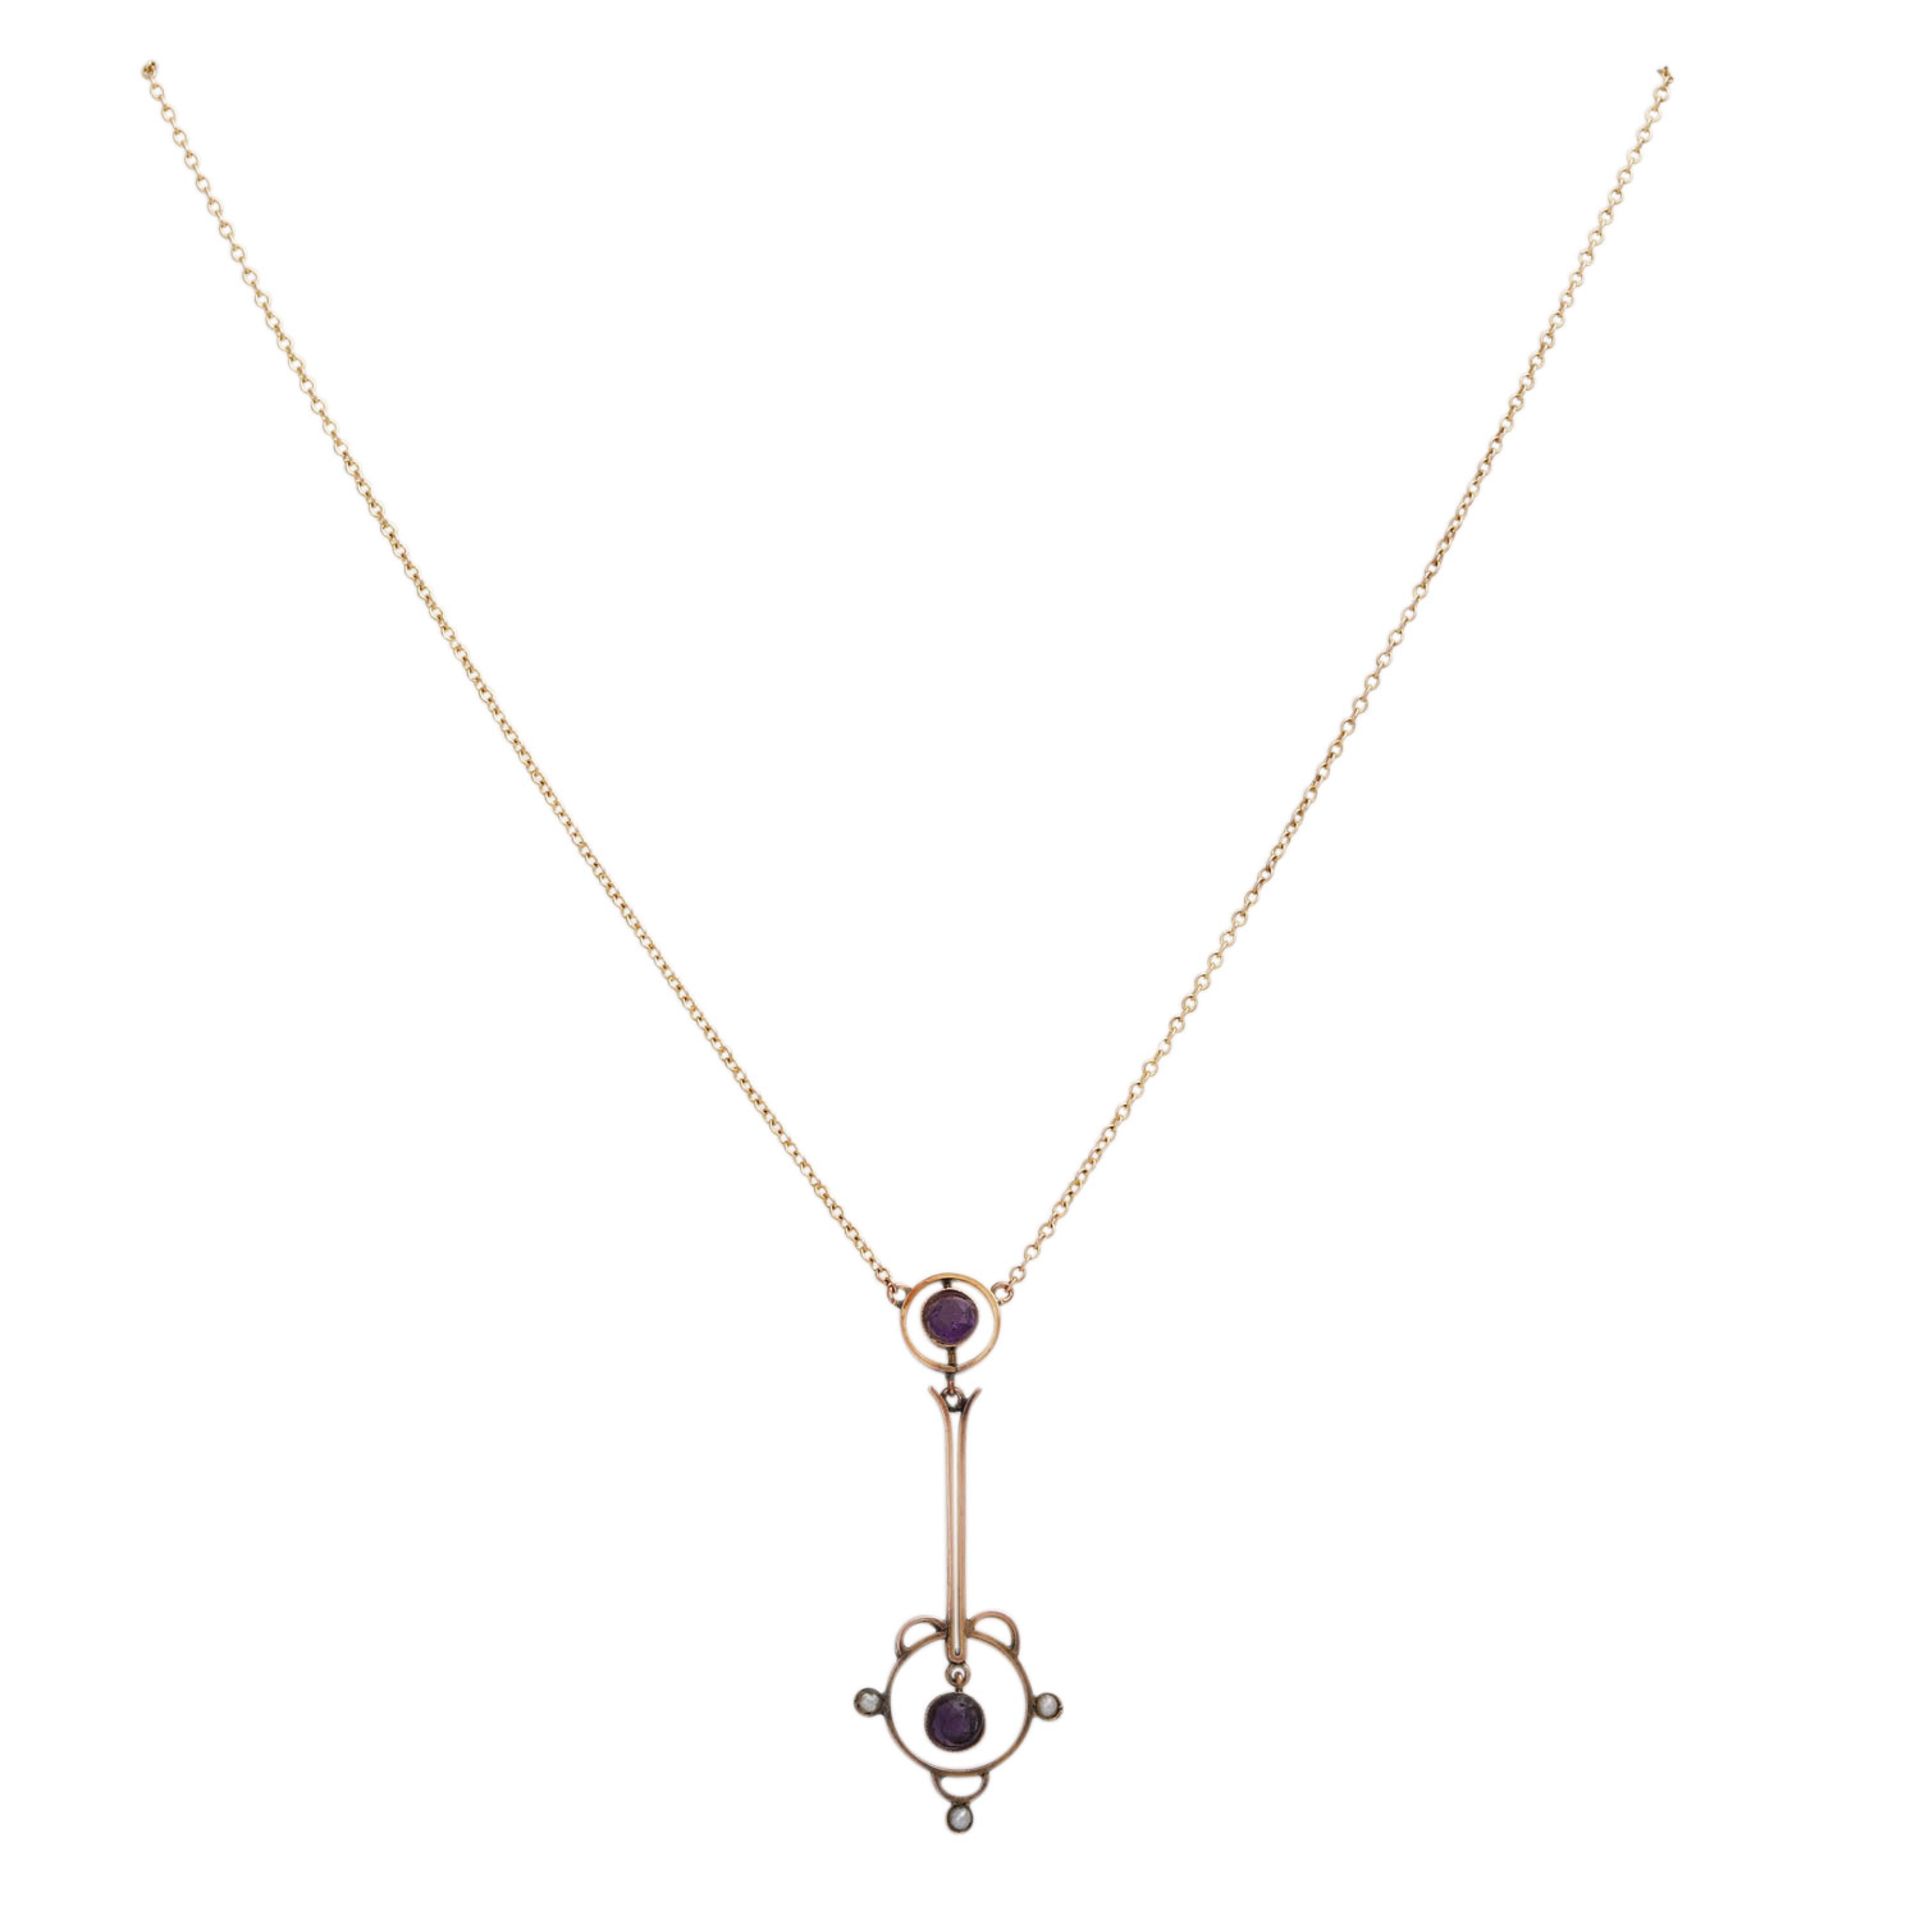 Jugendstil Collier mit kleinen Amethystenund kleinen Perlen, GG 9K, Kettenlänge ca. 39 cm,